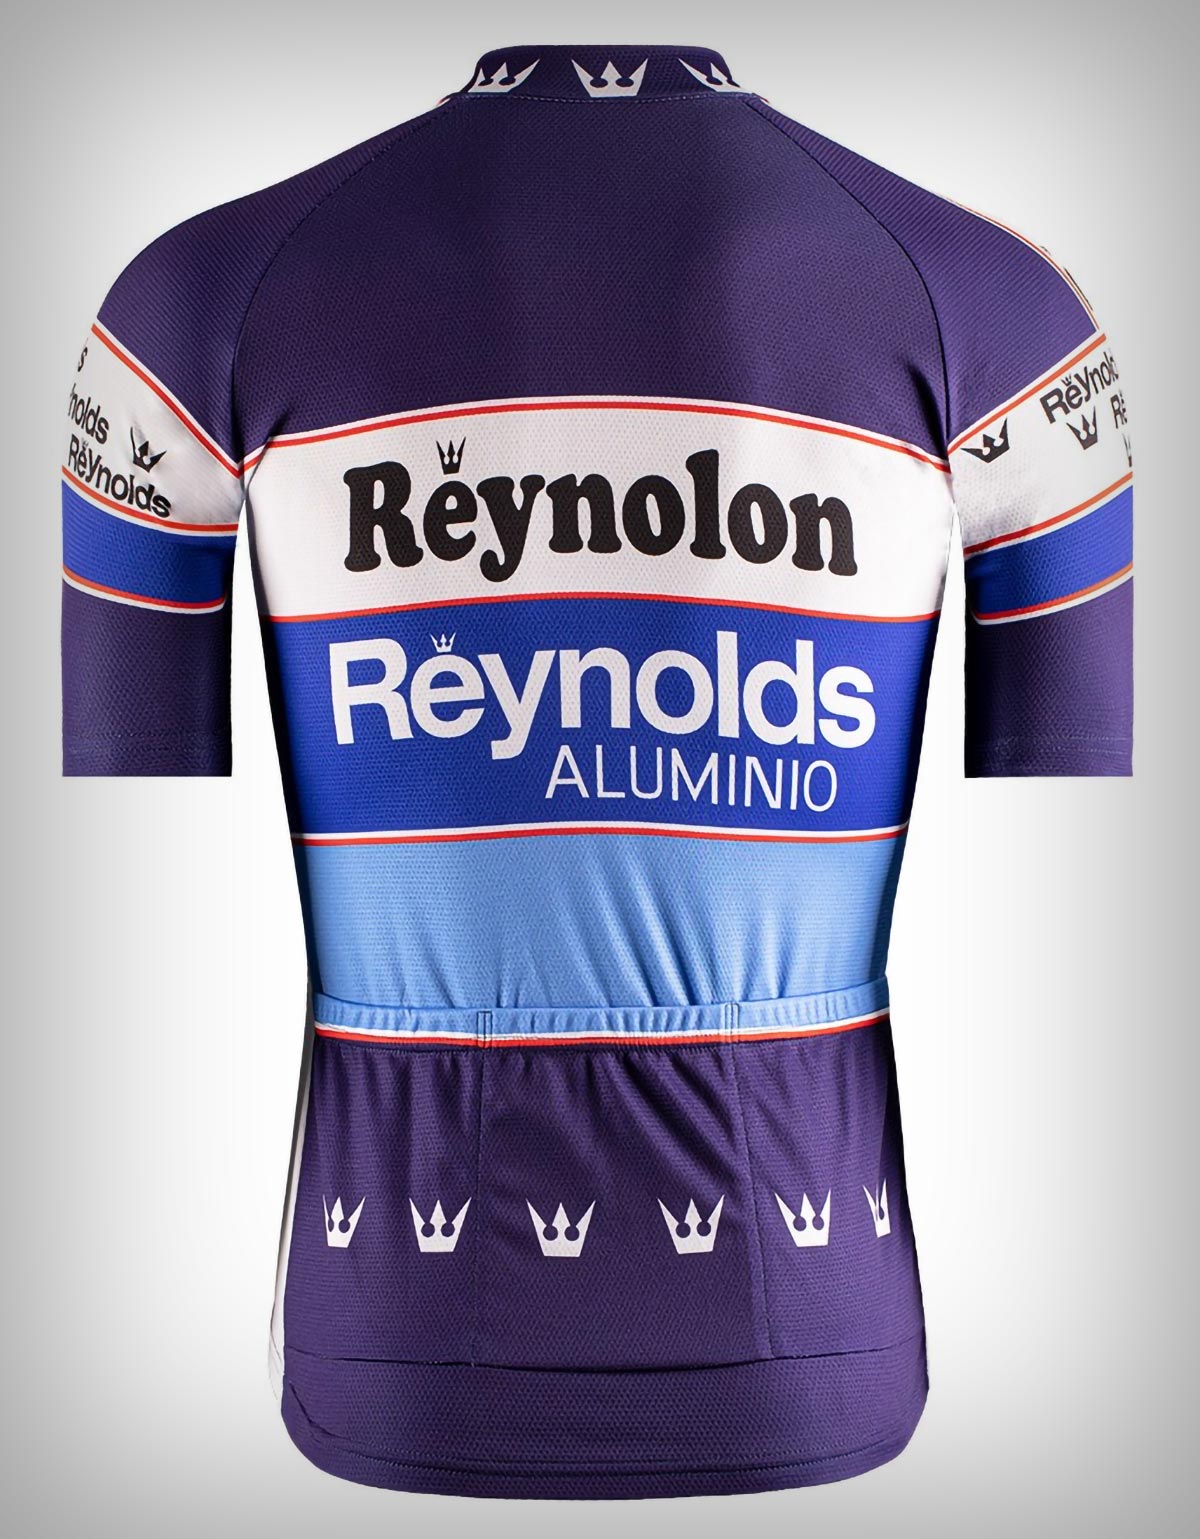 Etxeondo presenta una versión actualizada del maillot Reynolds con el que Perico Delgado ganó el Tour de 1988